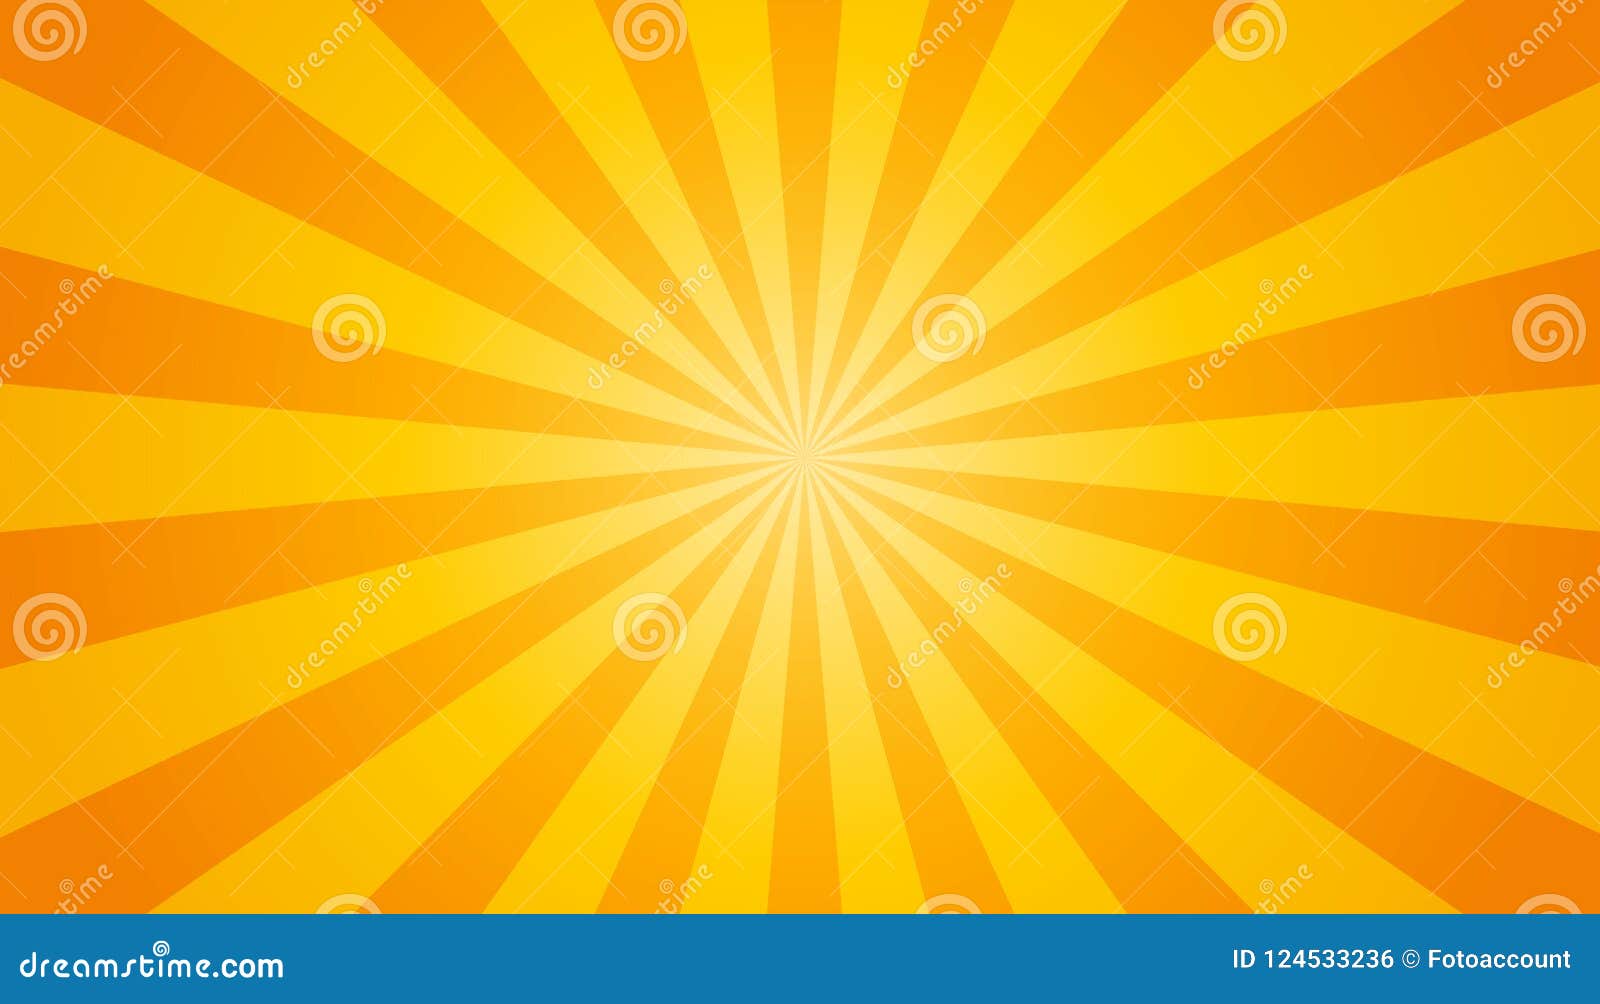 orange and yellow sunburst background -  